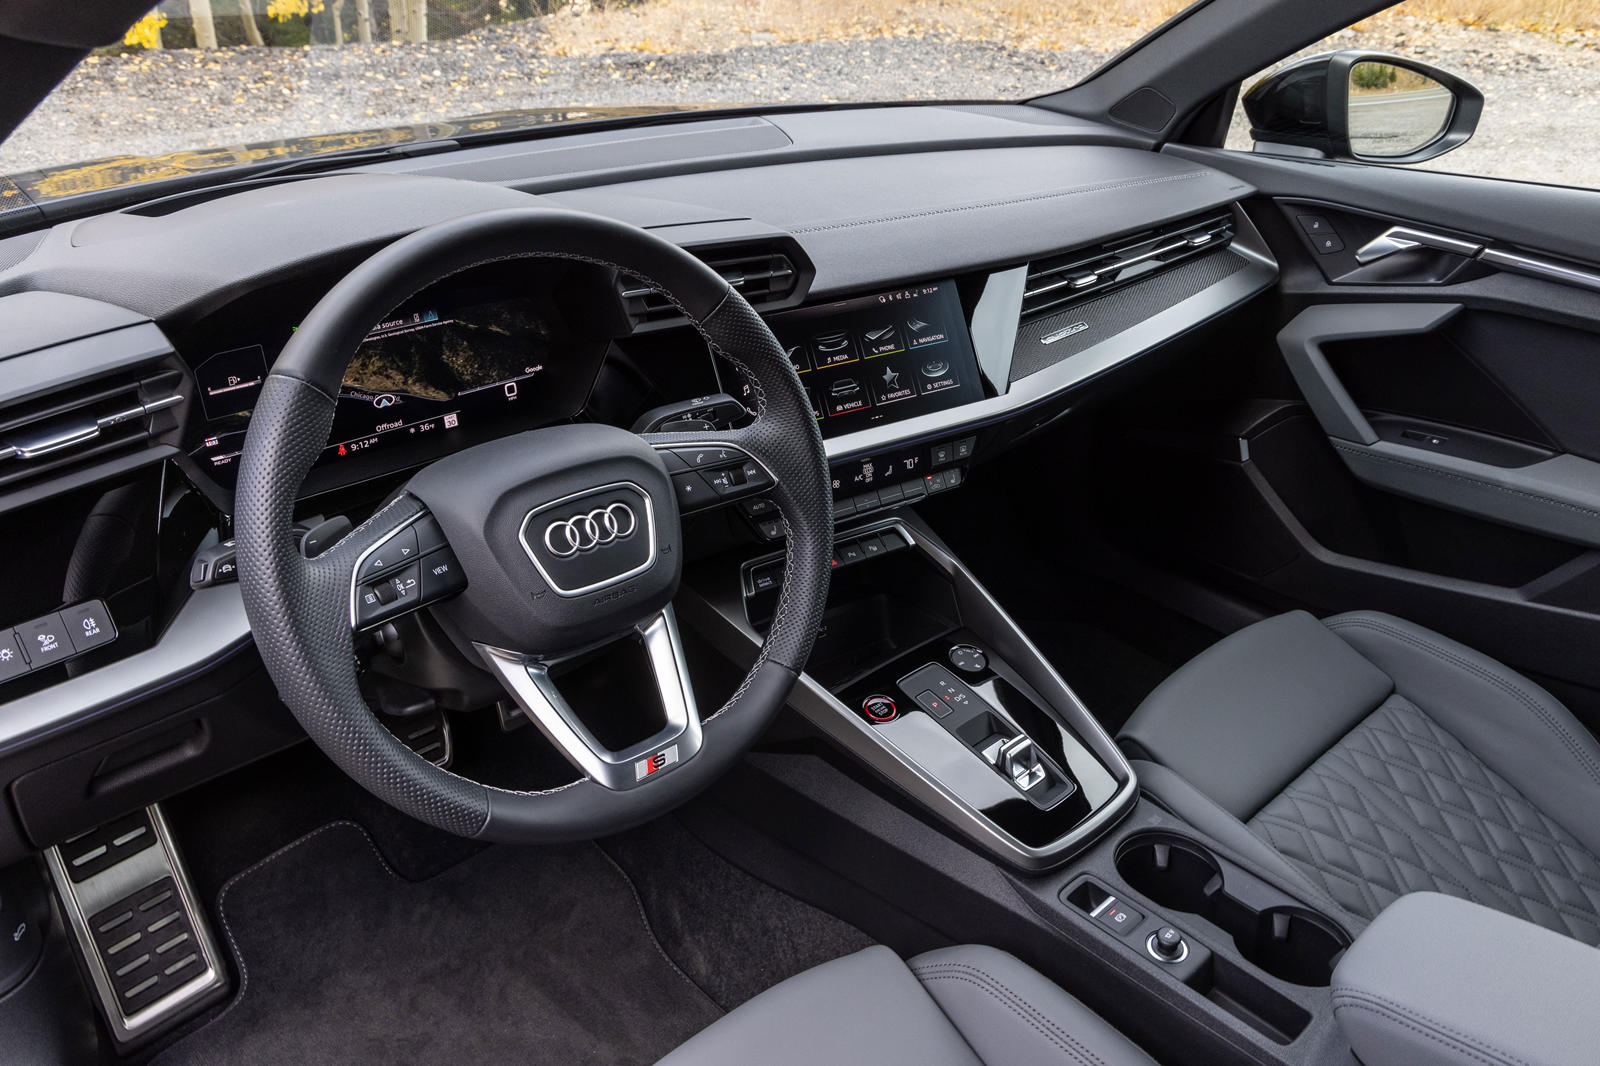 2023 Audi S3 Sedan Interior Dimensions: Seating, Cargo Space